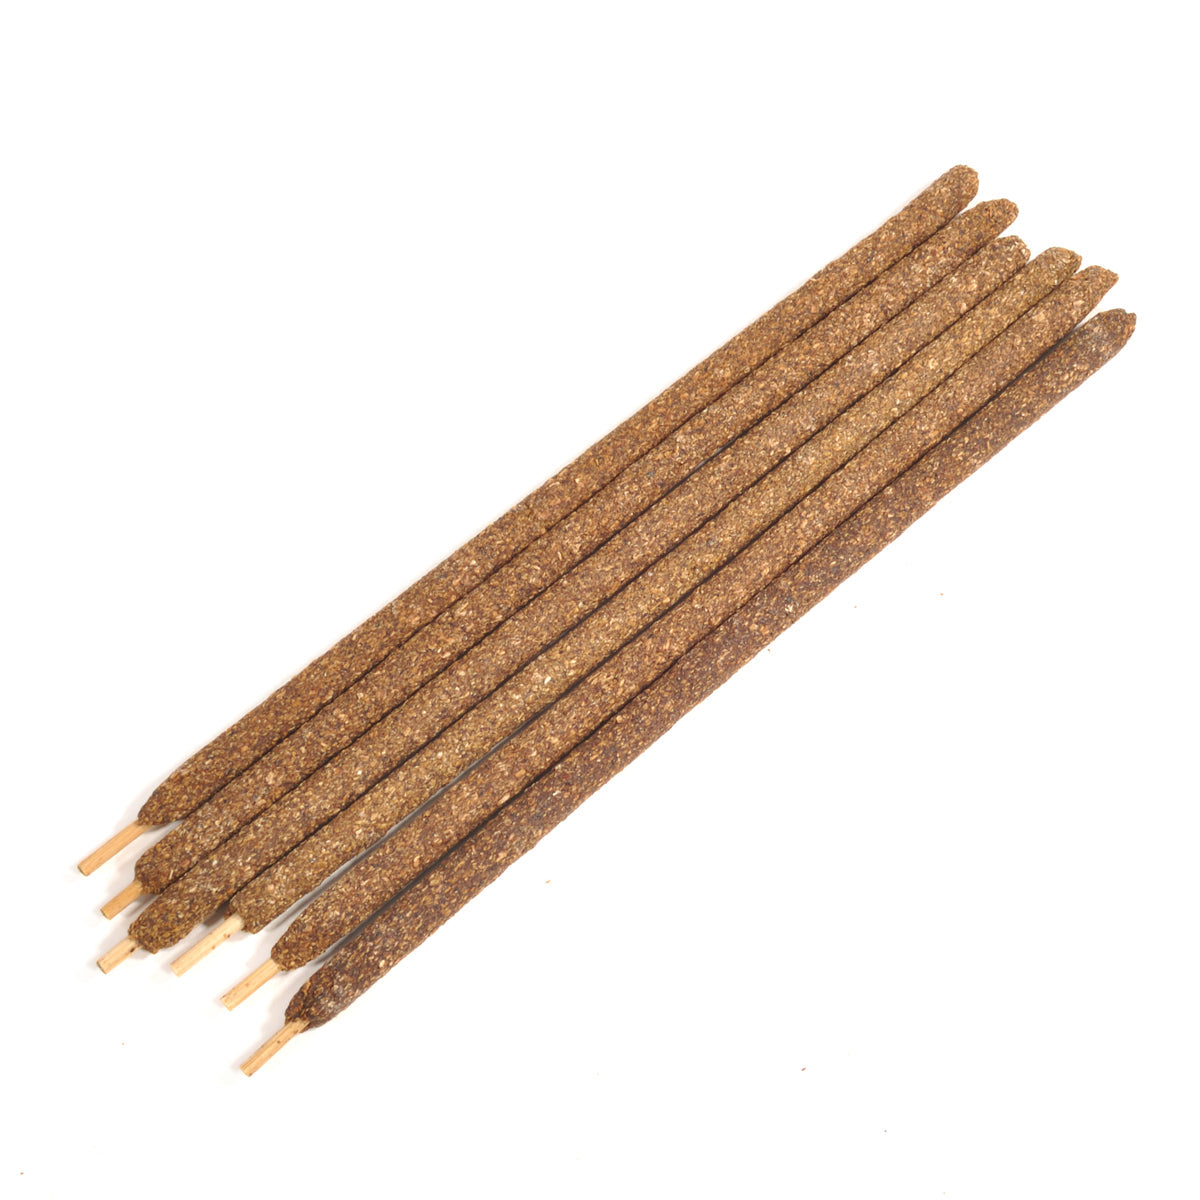 ルナスンダラ (Luna Sundara) Premium Myrrh Hand Rolled Incense Sticks プレミアム ミルラ ハンドロールインセンスお香[6本入りBOX]